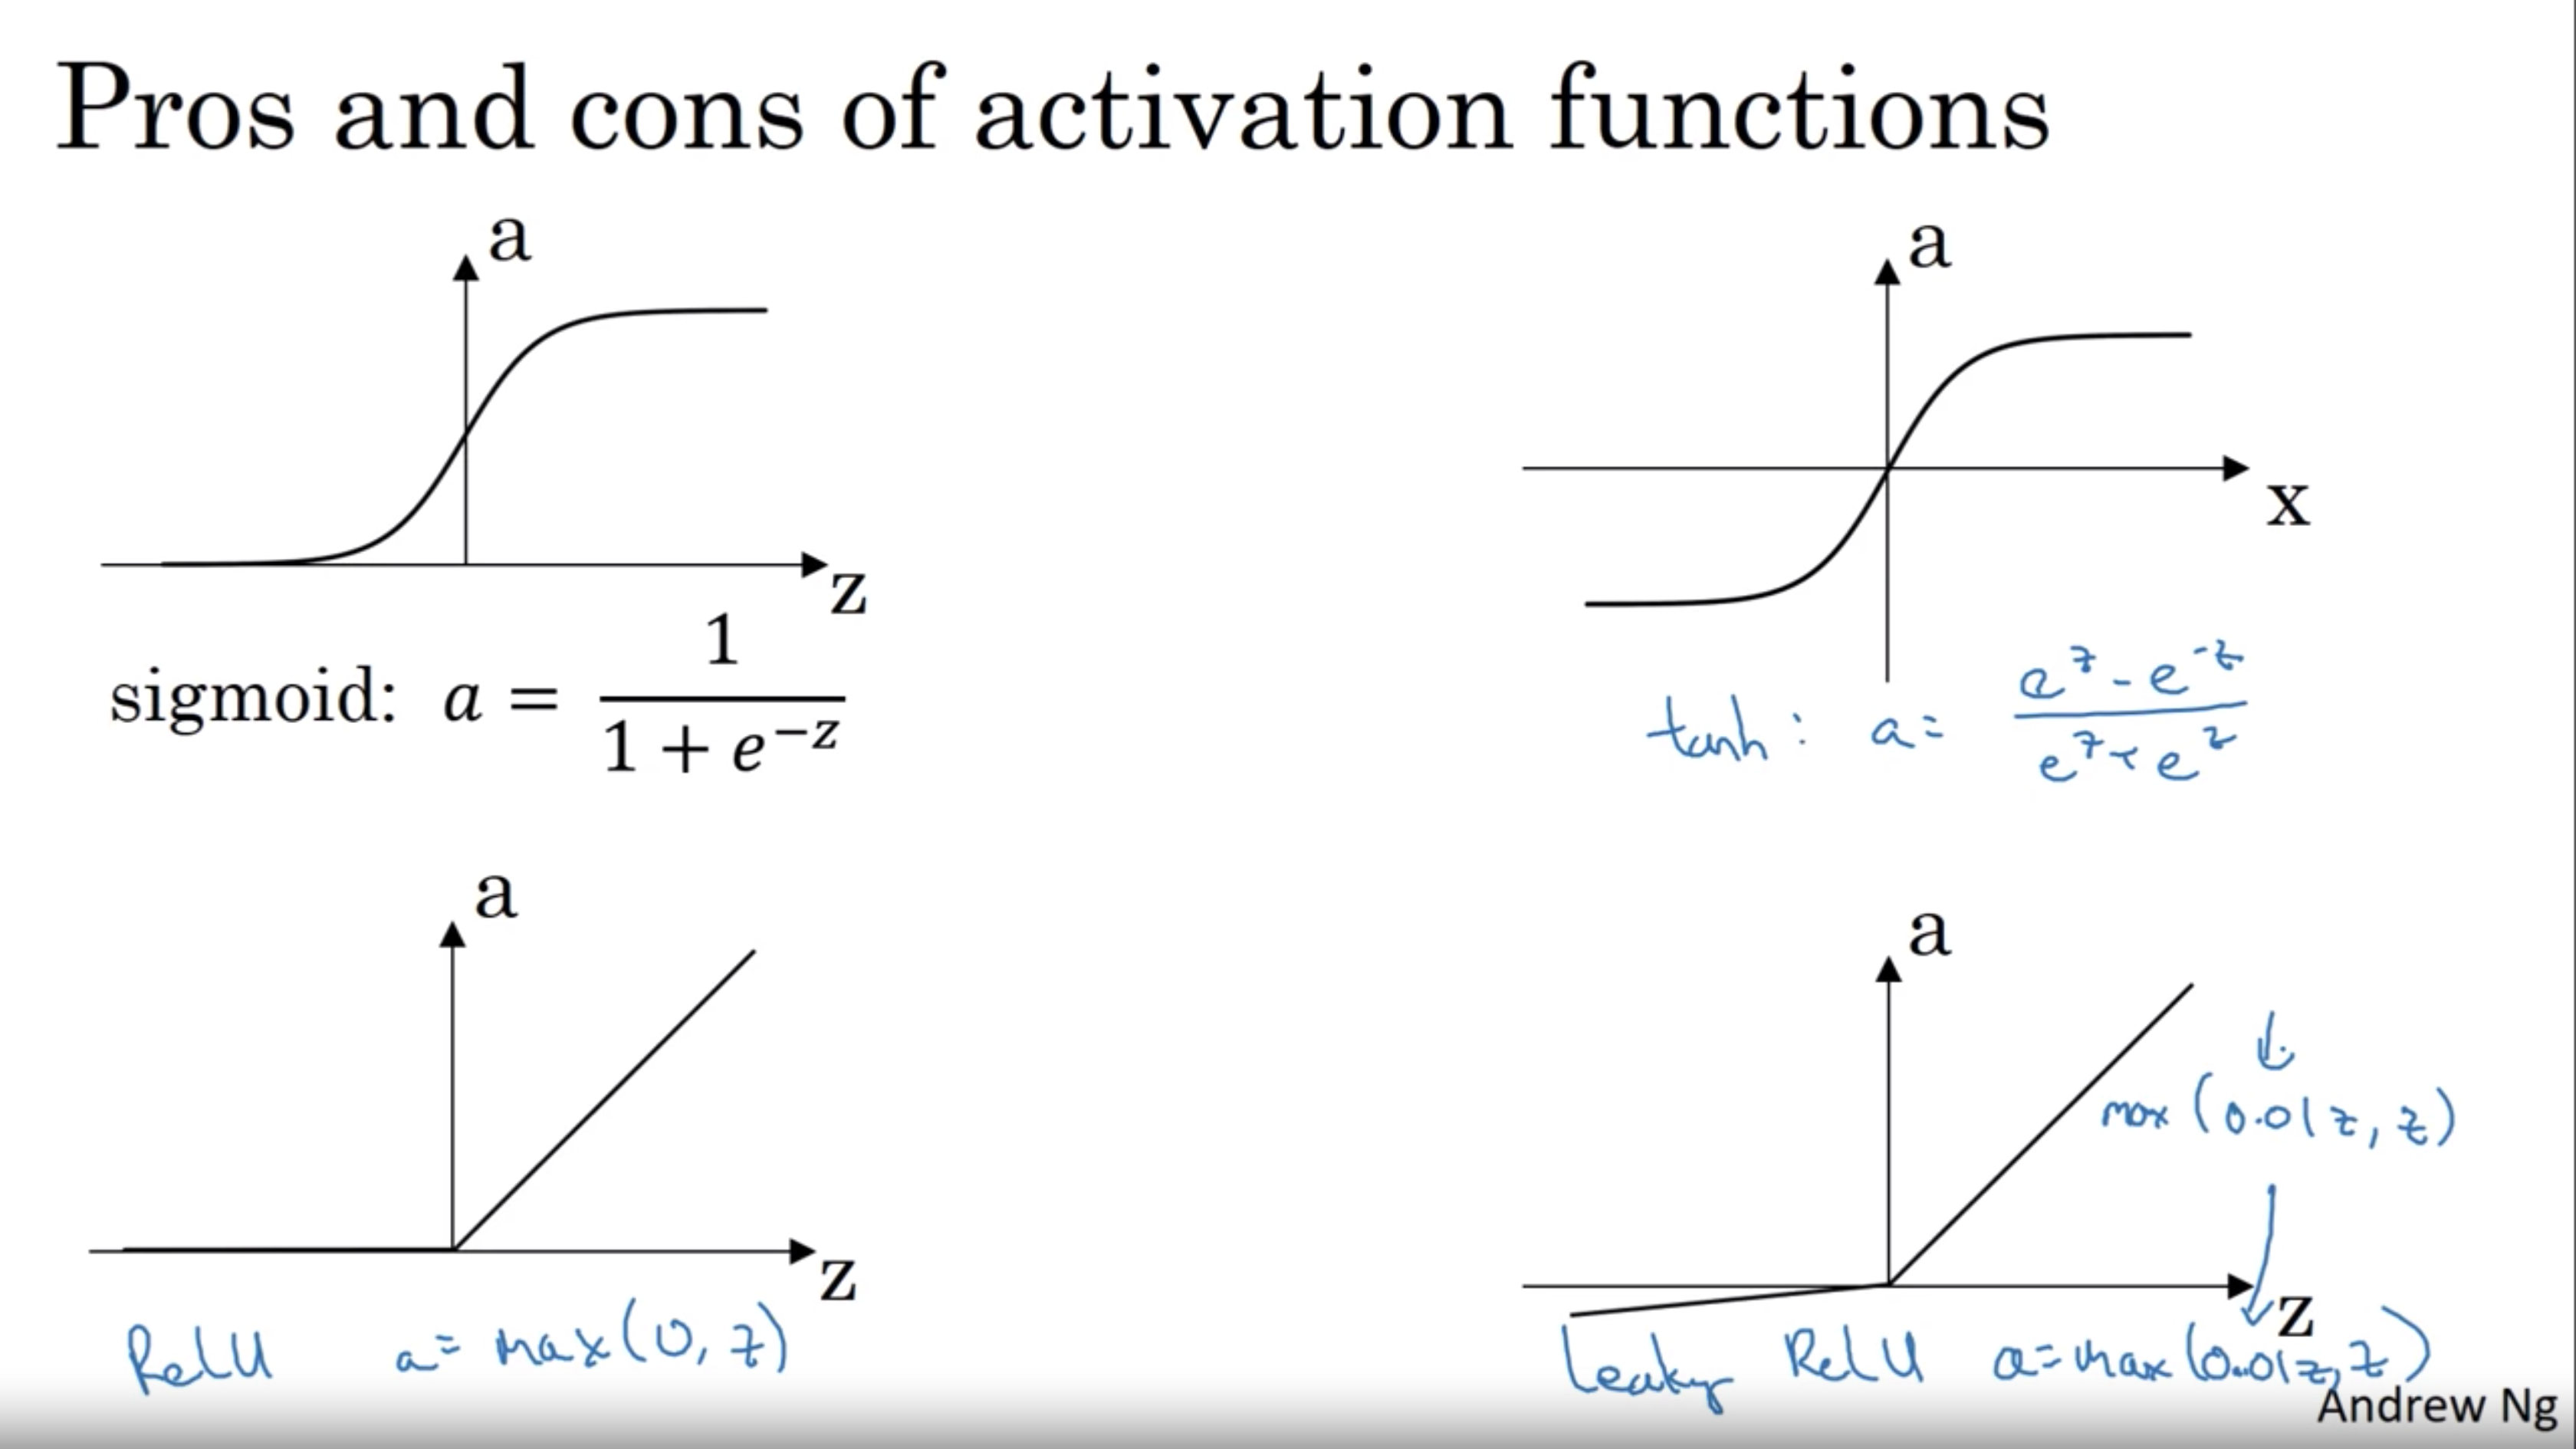 Relu функция активации. Sigmoid функция активации. Активационная функция sigmoid. Tanh функция активации.